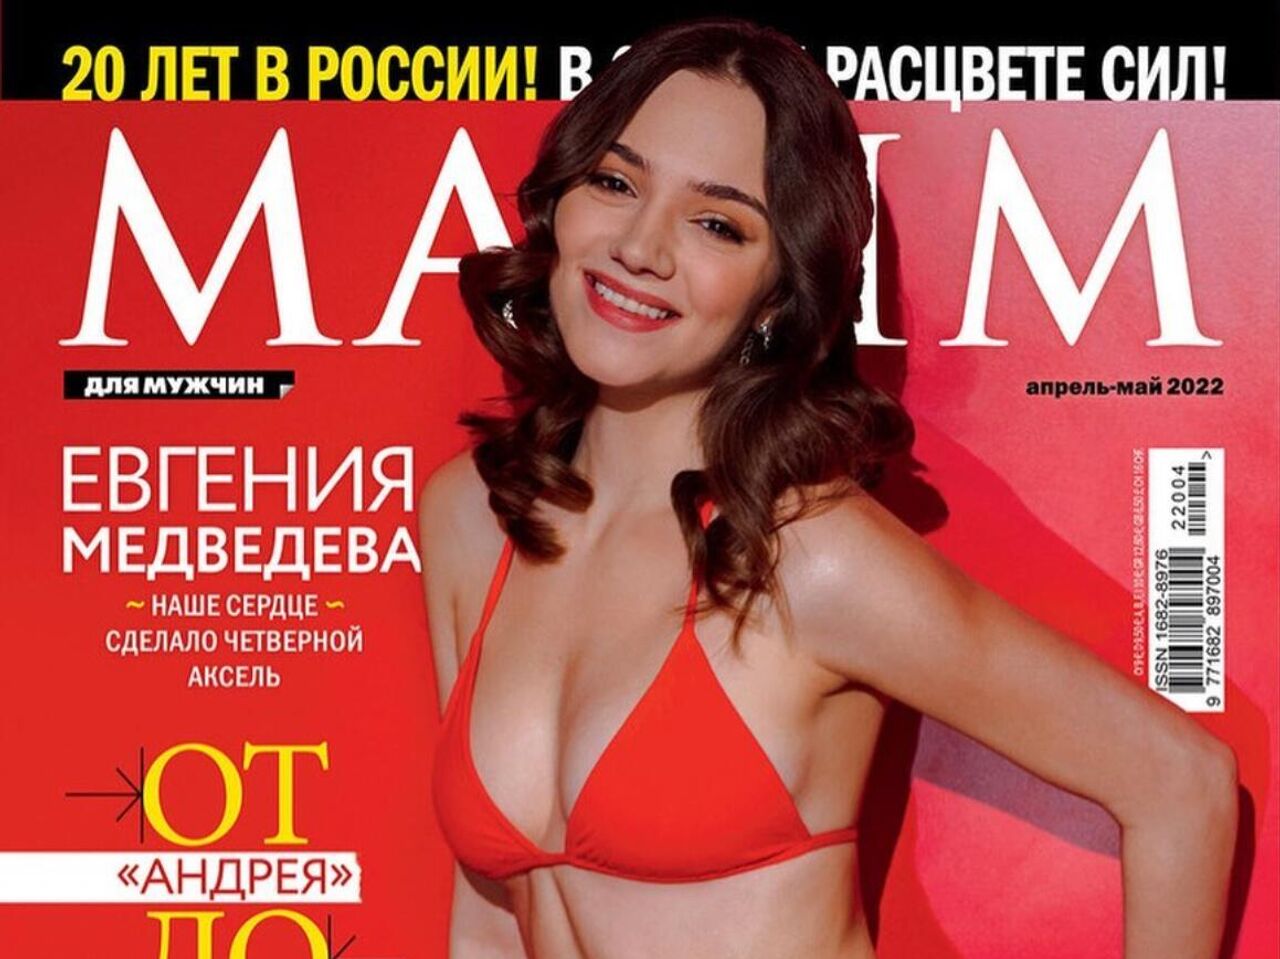 Медведева обложка. Журнал Maxim 2022 Медведева.